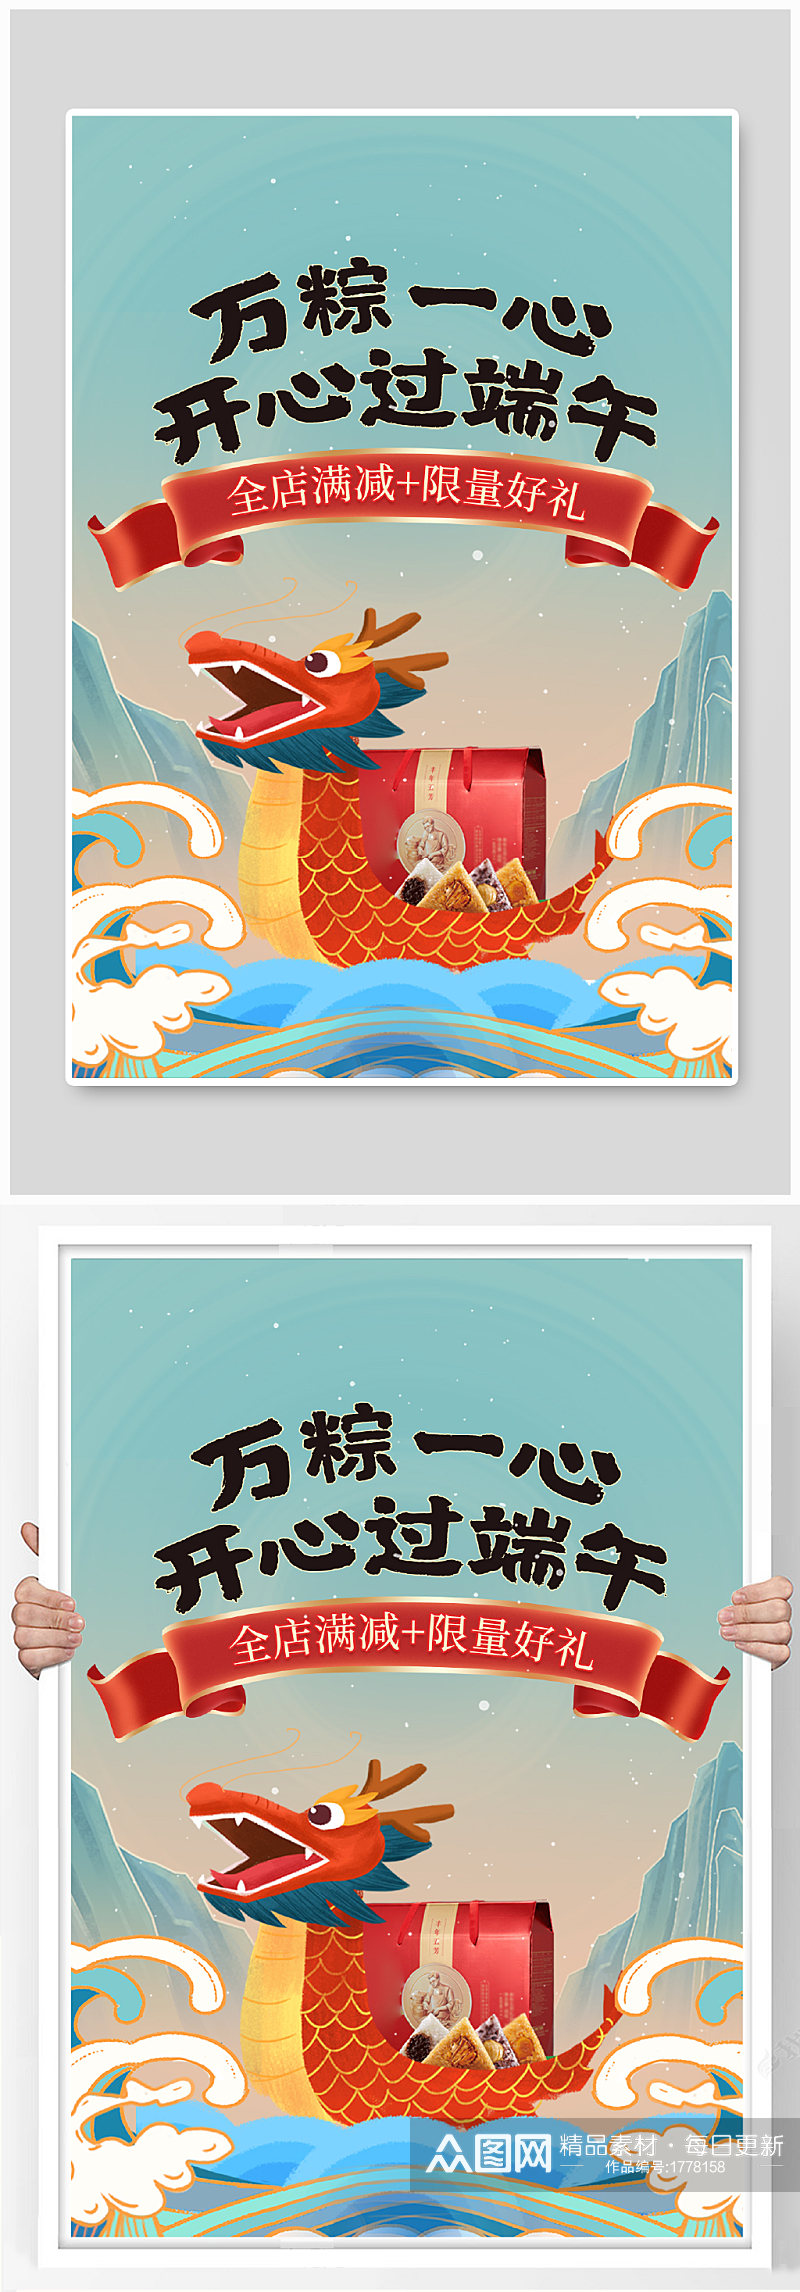 中国风手绘漫画端午节龙舟粽子海报素材